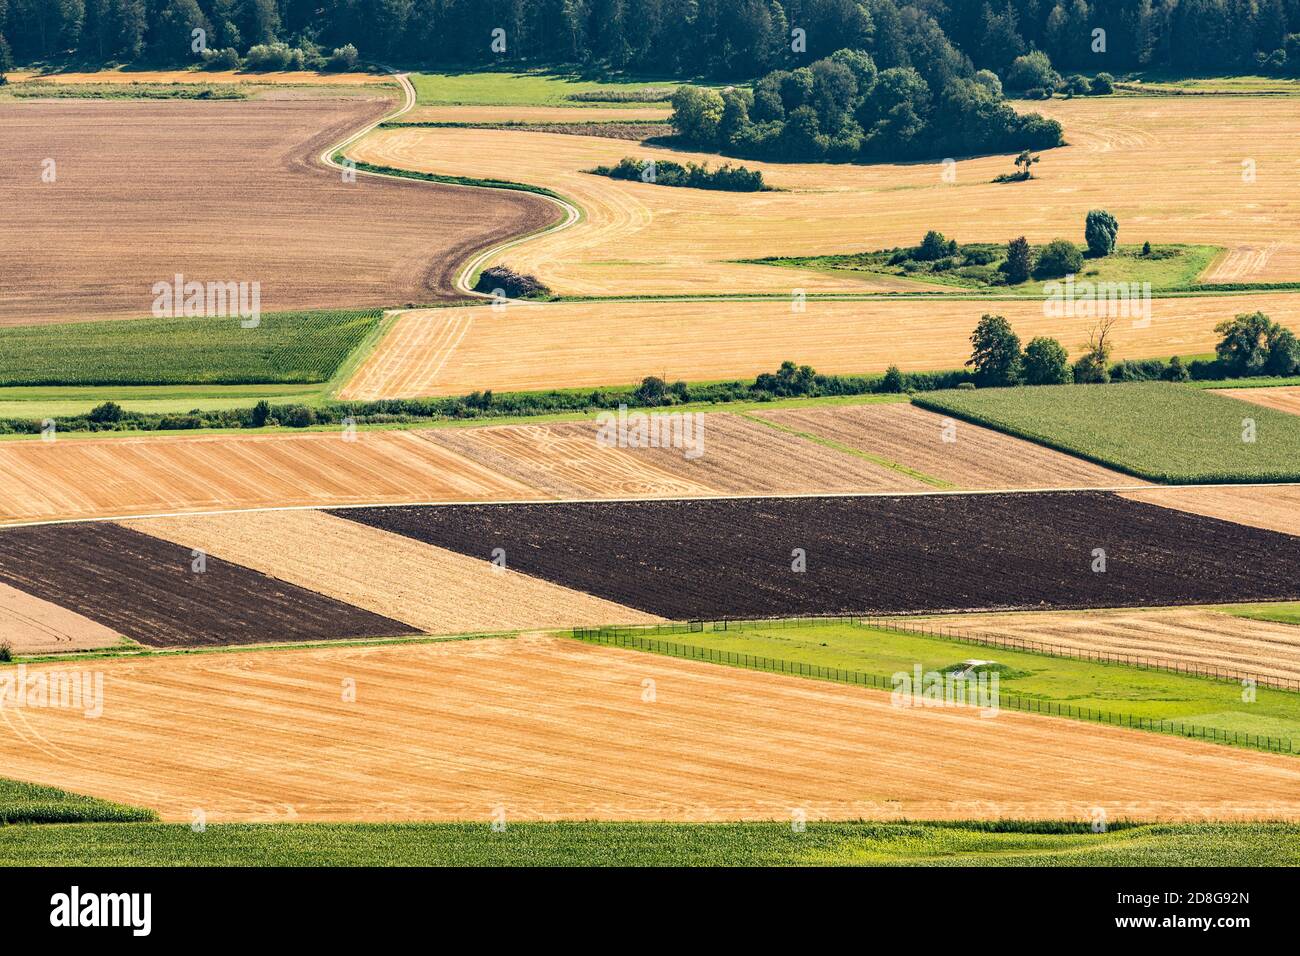 Beilngries, Felder, Landwirtschaft Foto de stock